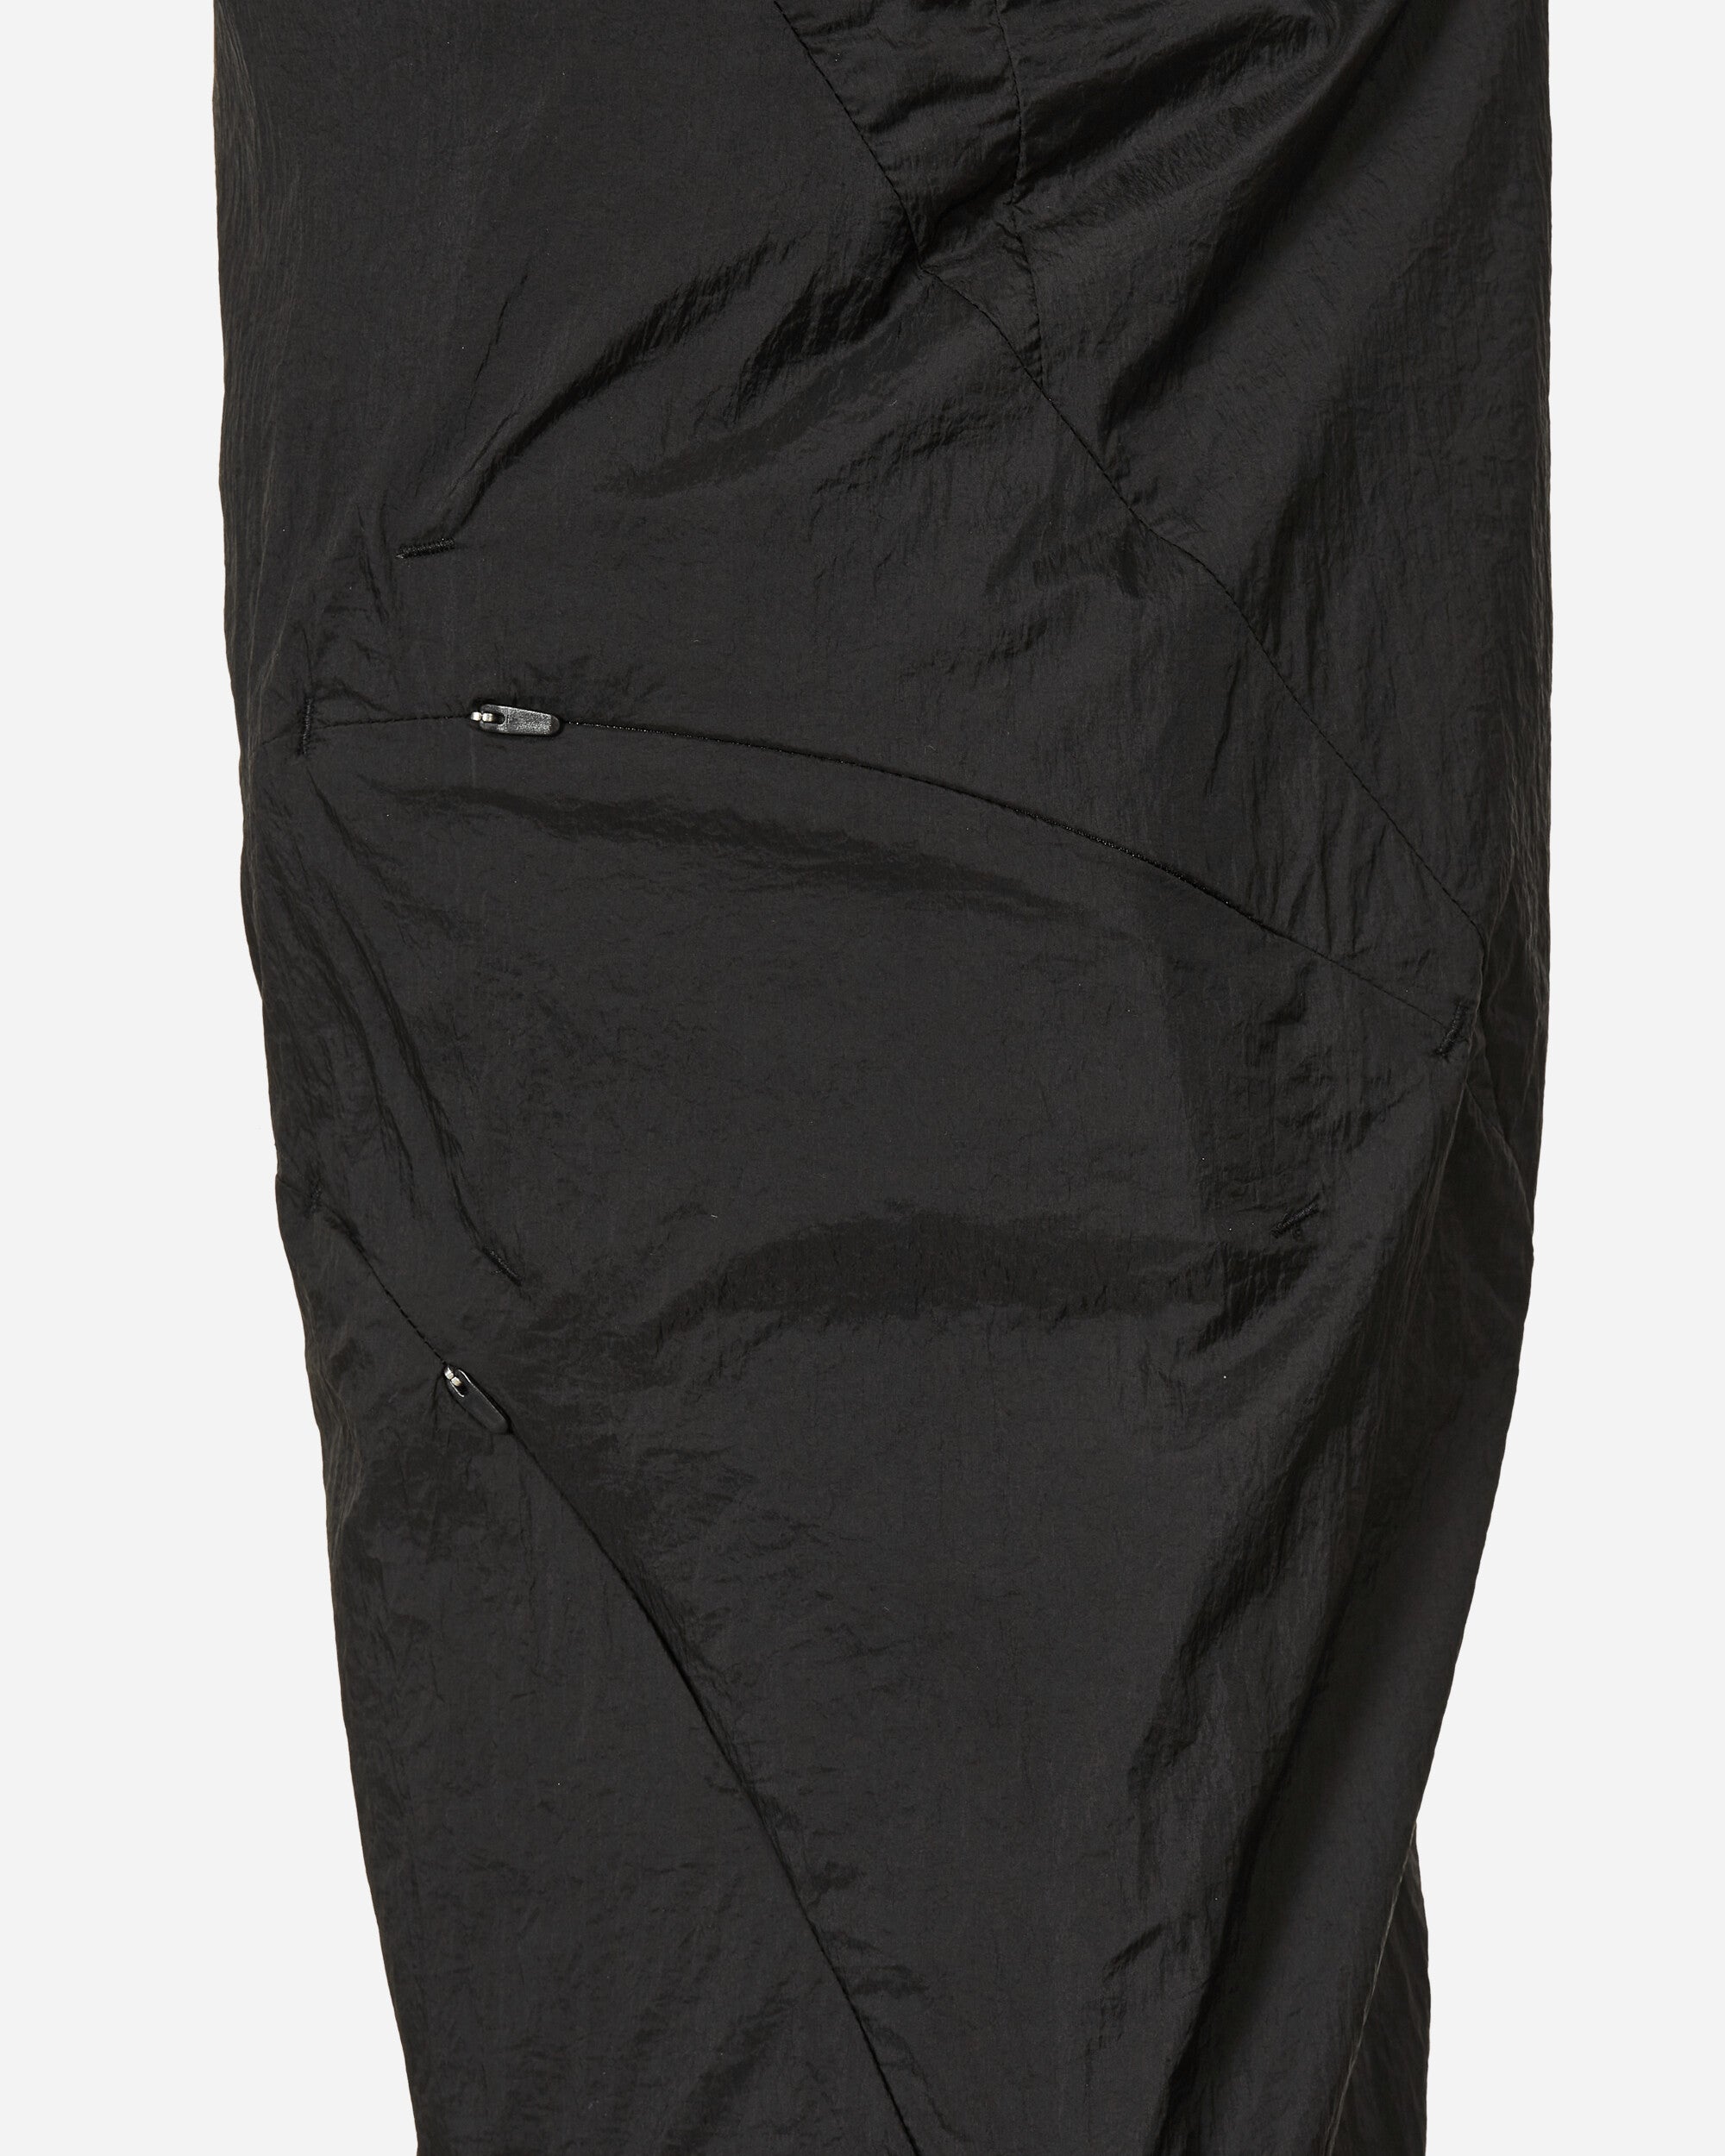 Post Archive Faction (PAF) 5.0+ Trousers Center Black/Charcoal Pants Trousers 50BTCBC BKCH 